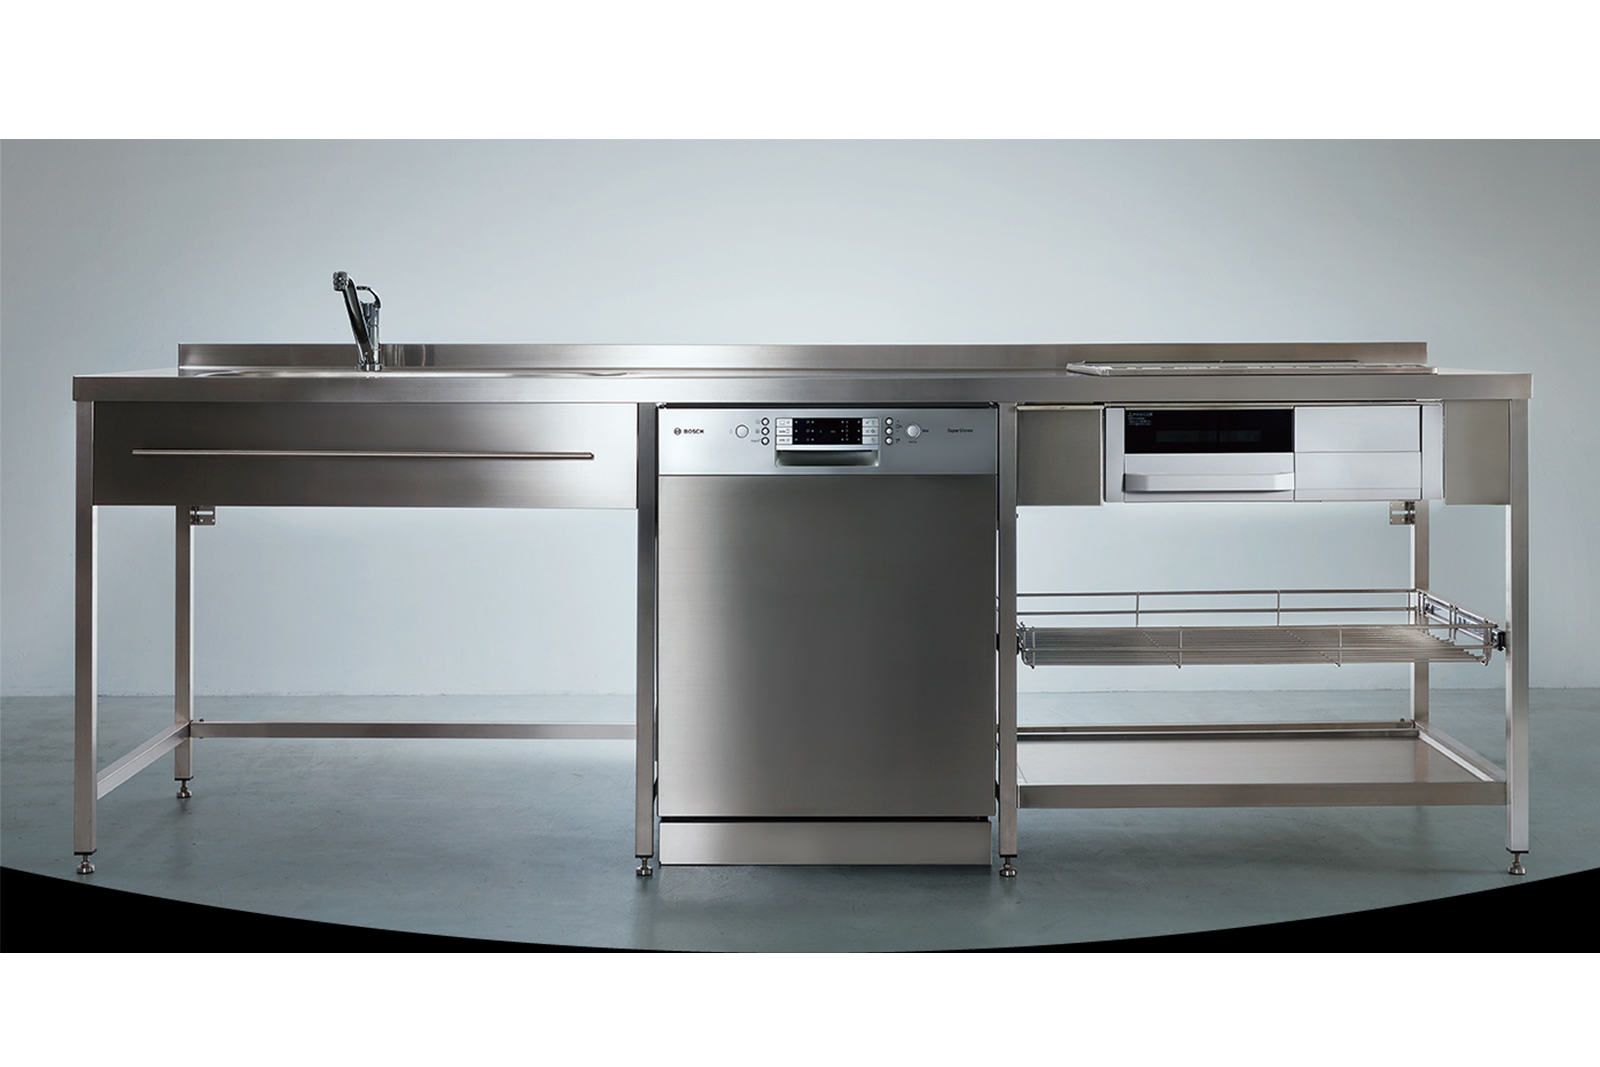 ステンレスフレームキッチン W2700×D650 KB-KC005-05-G078 中央はオプションのフロントオープン食洗機 W600（W2100・W2250・W2400はW450の食洗機のみ設置可能）※タオルバーは旧仕様のW800、現行はW490